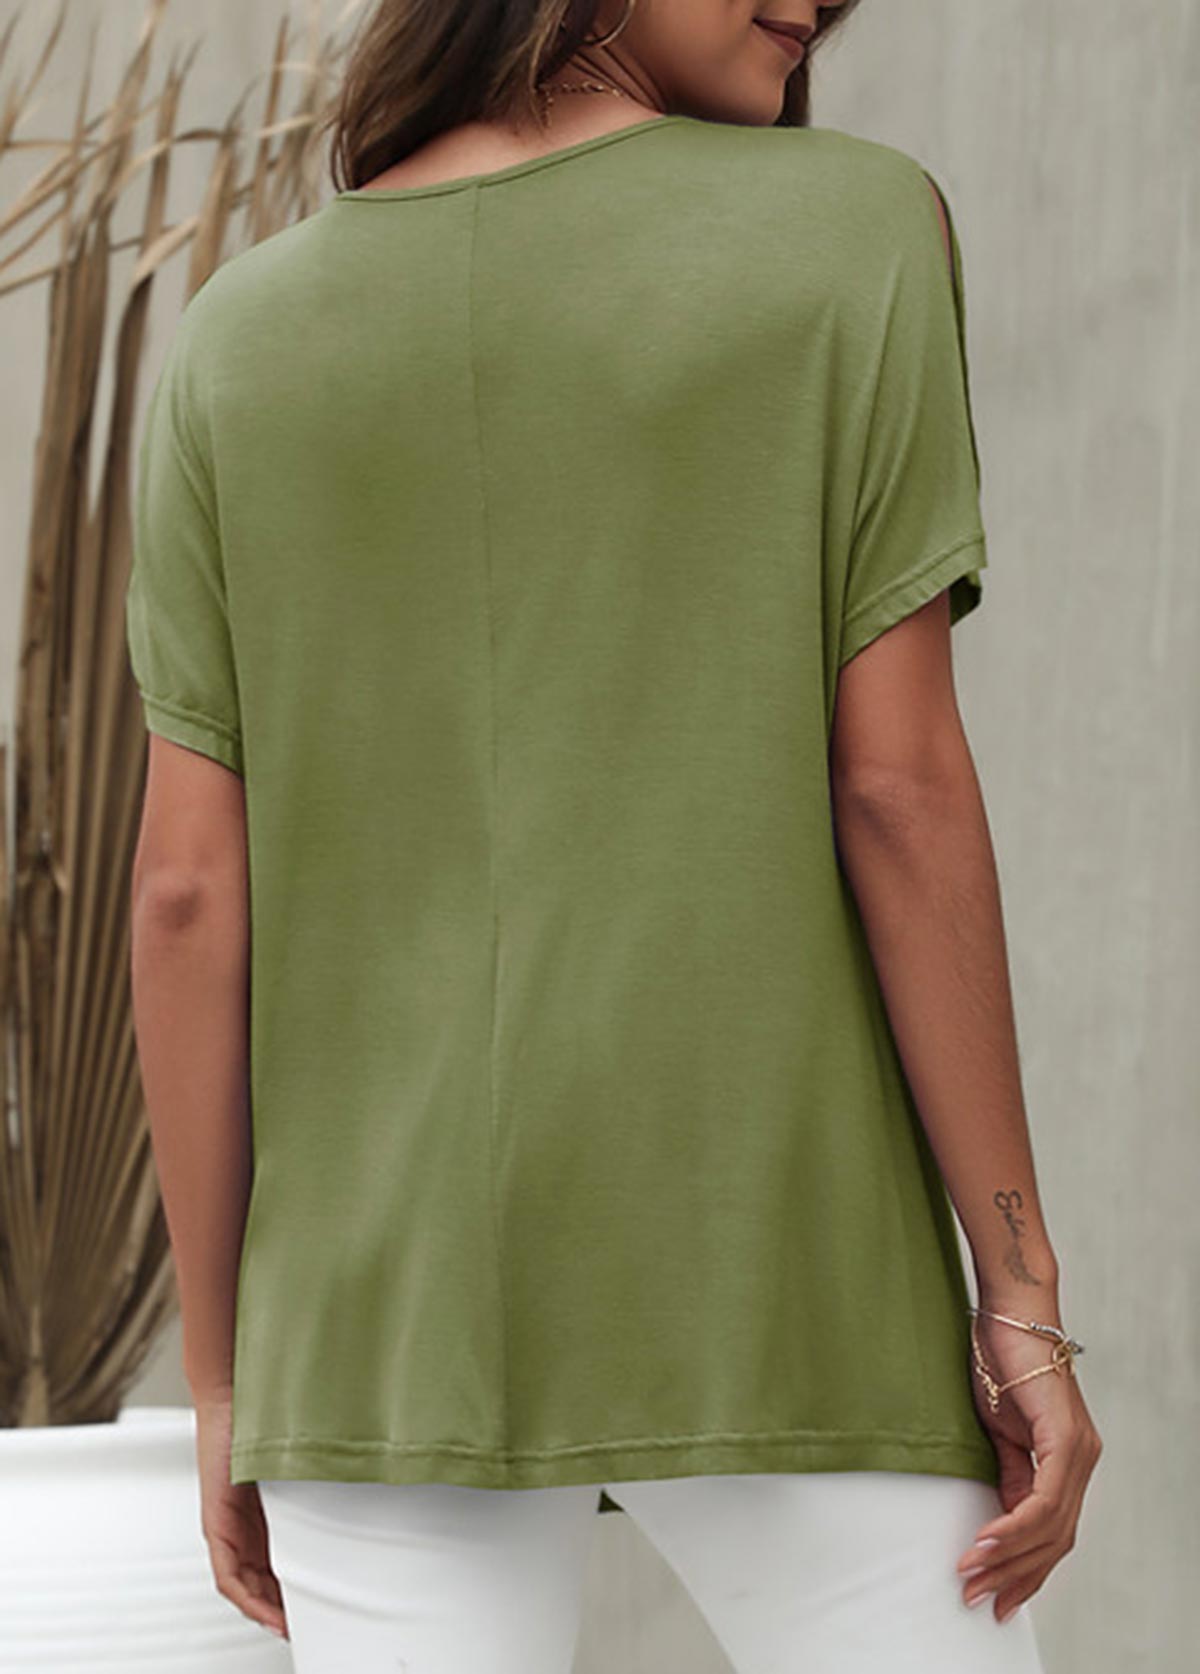 Slit Sleeve V Neck Army Green T Shirt